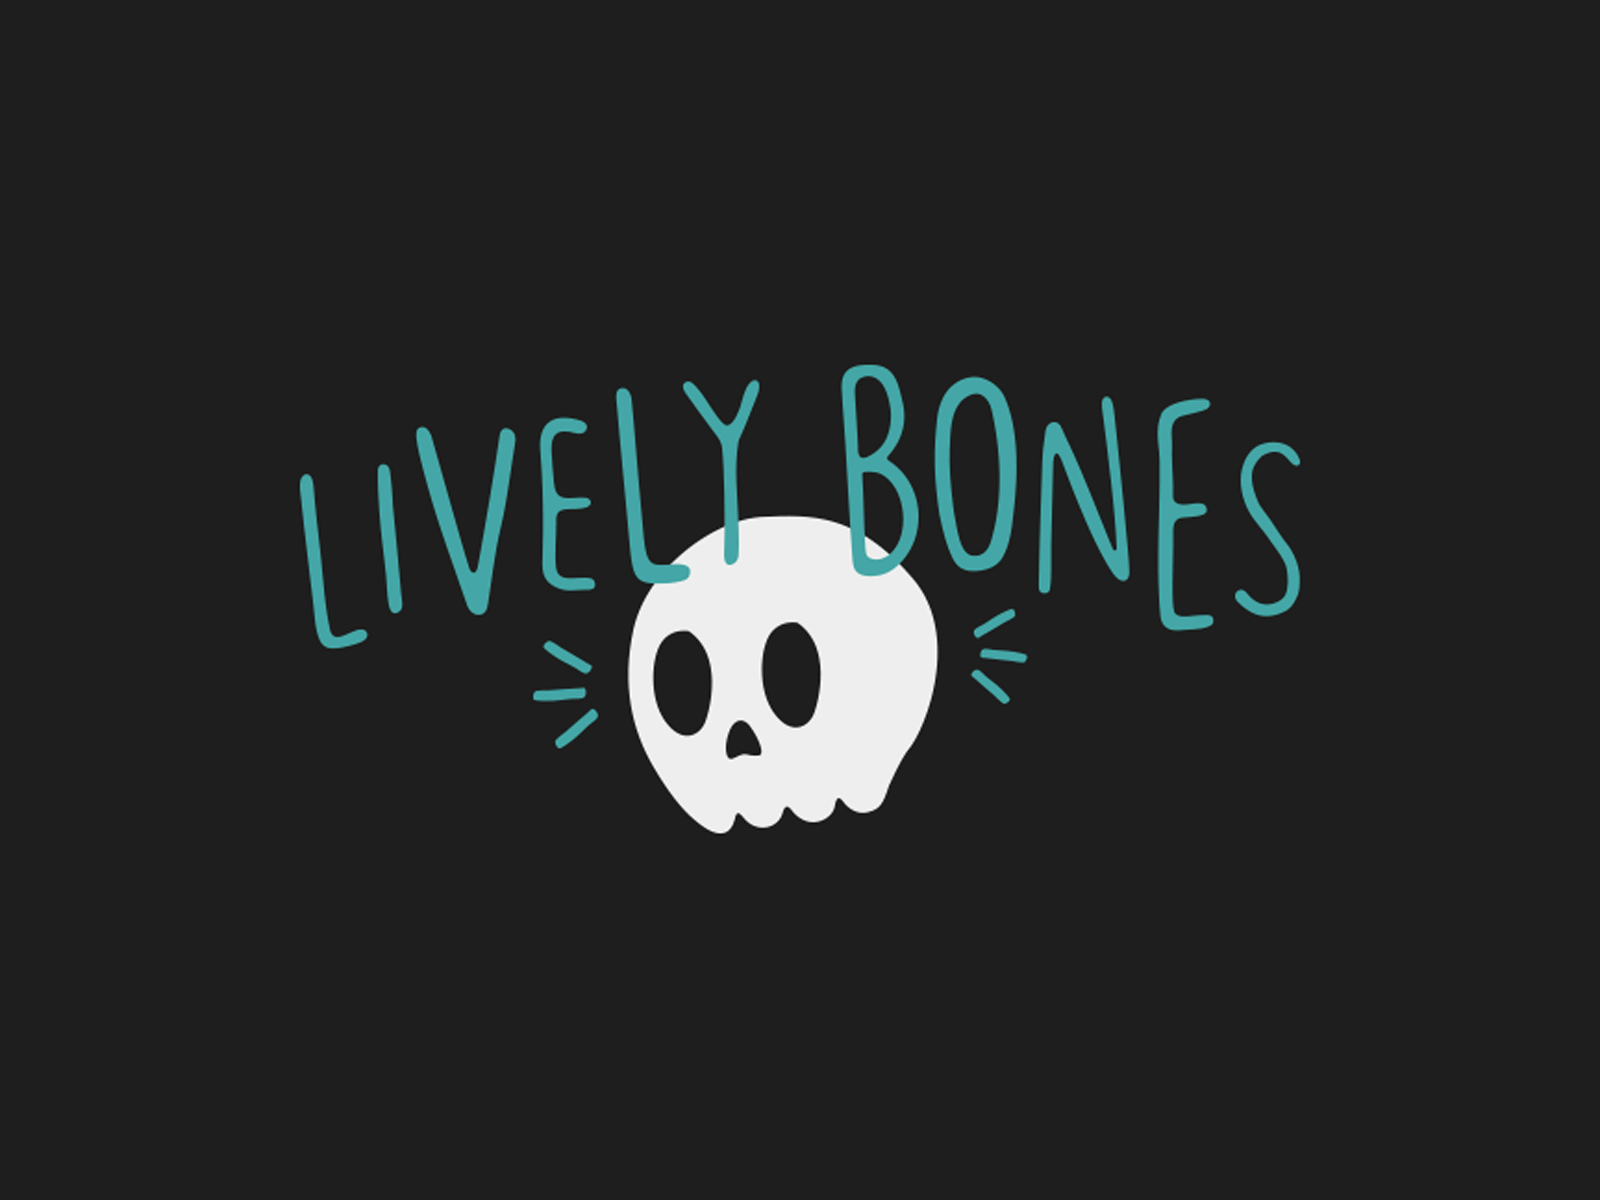 The Lively Bones